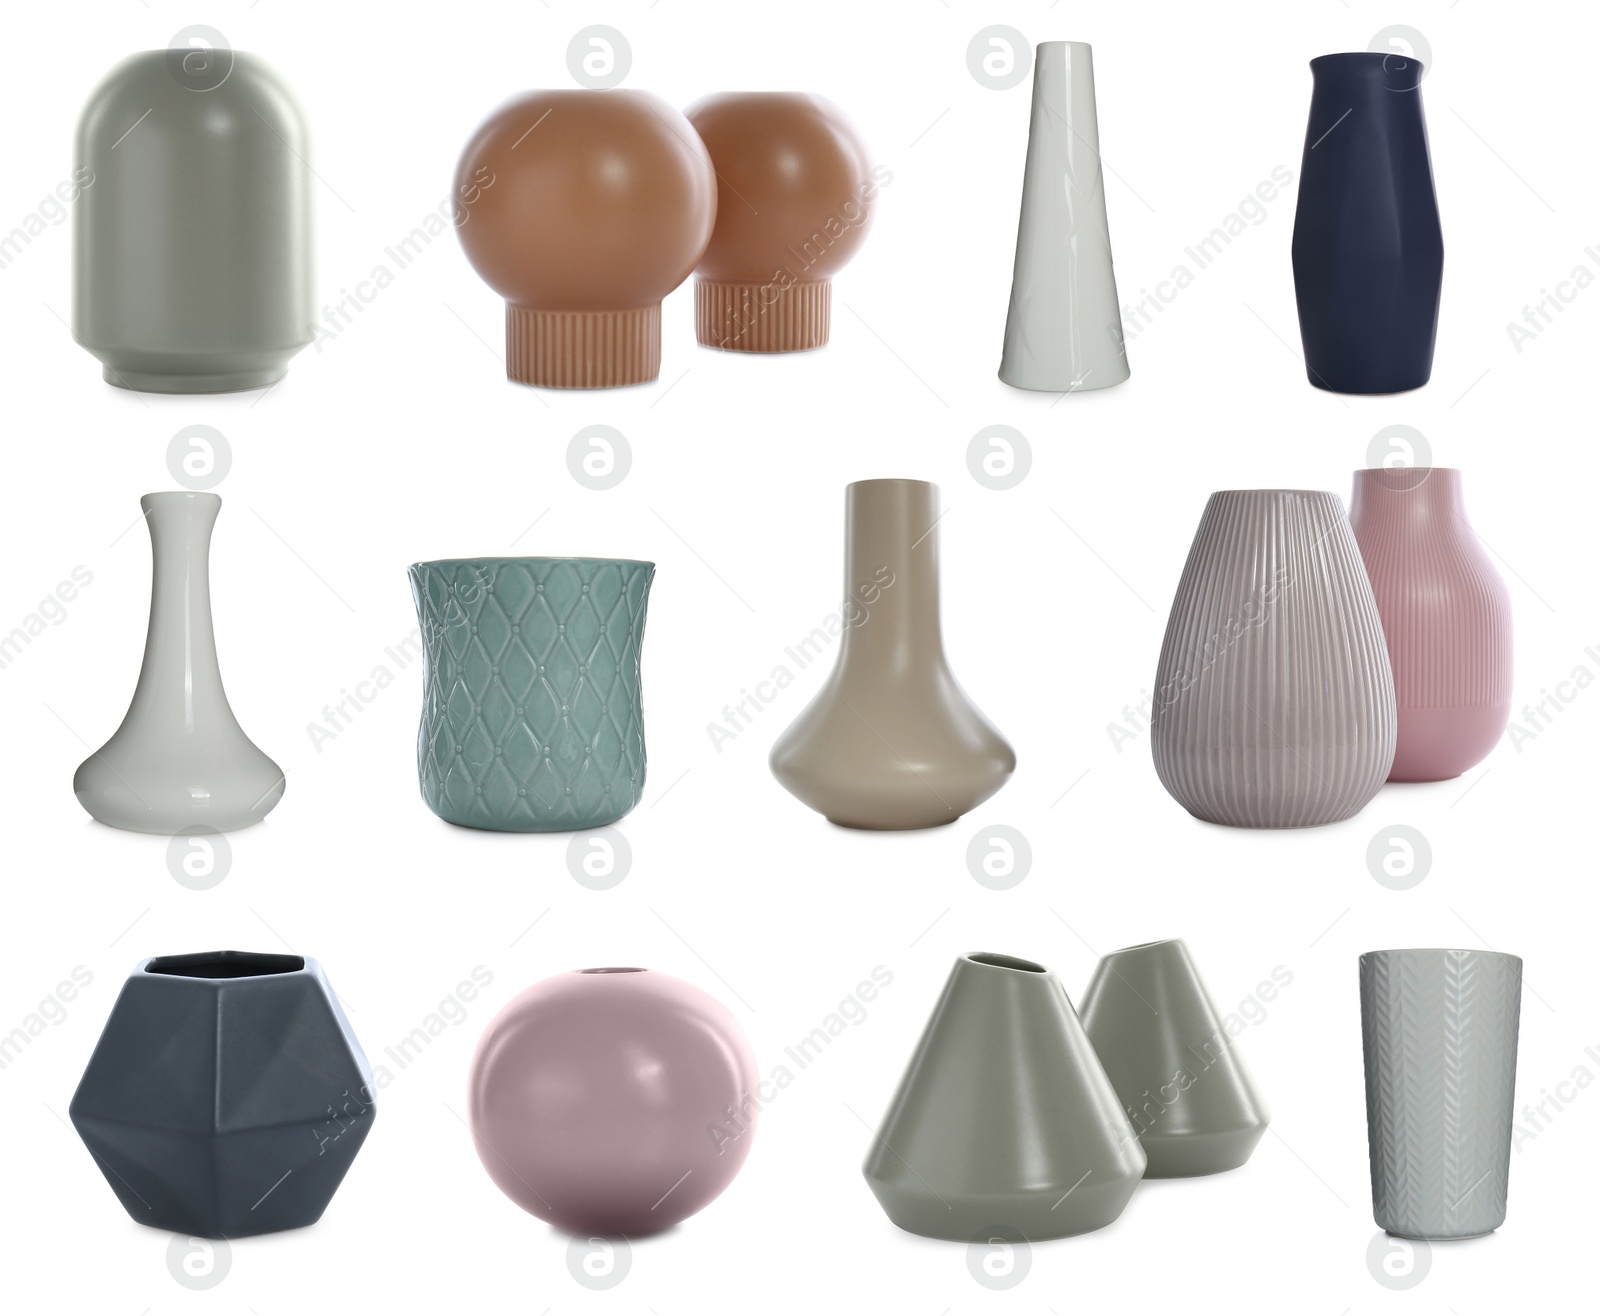 Image of Set of beautiful ceramic vases on white background 